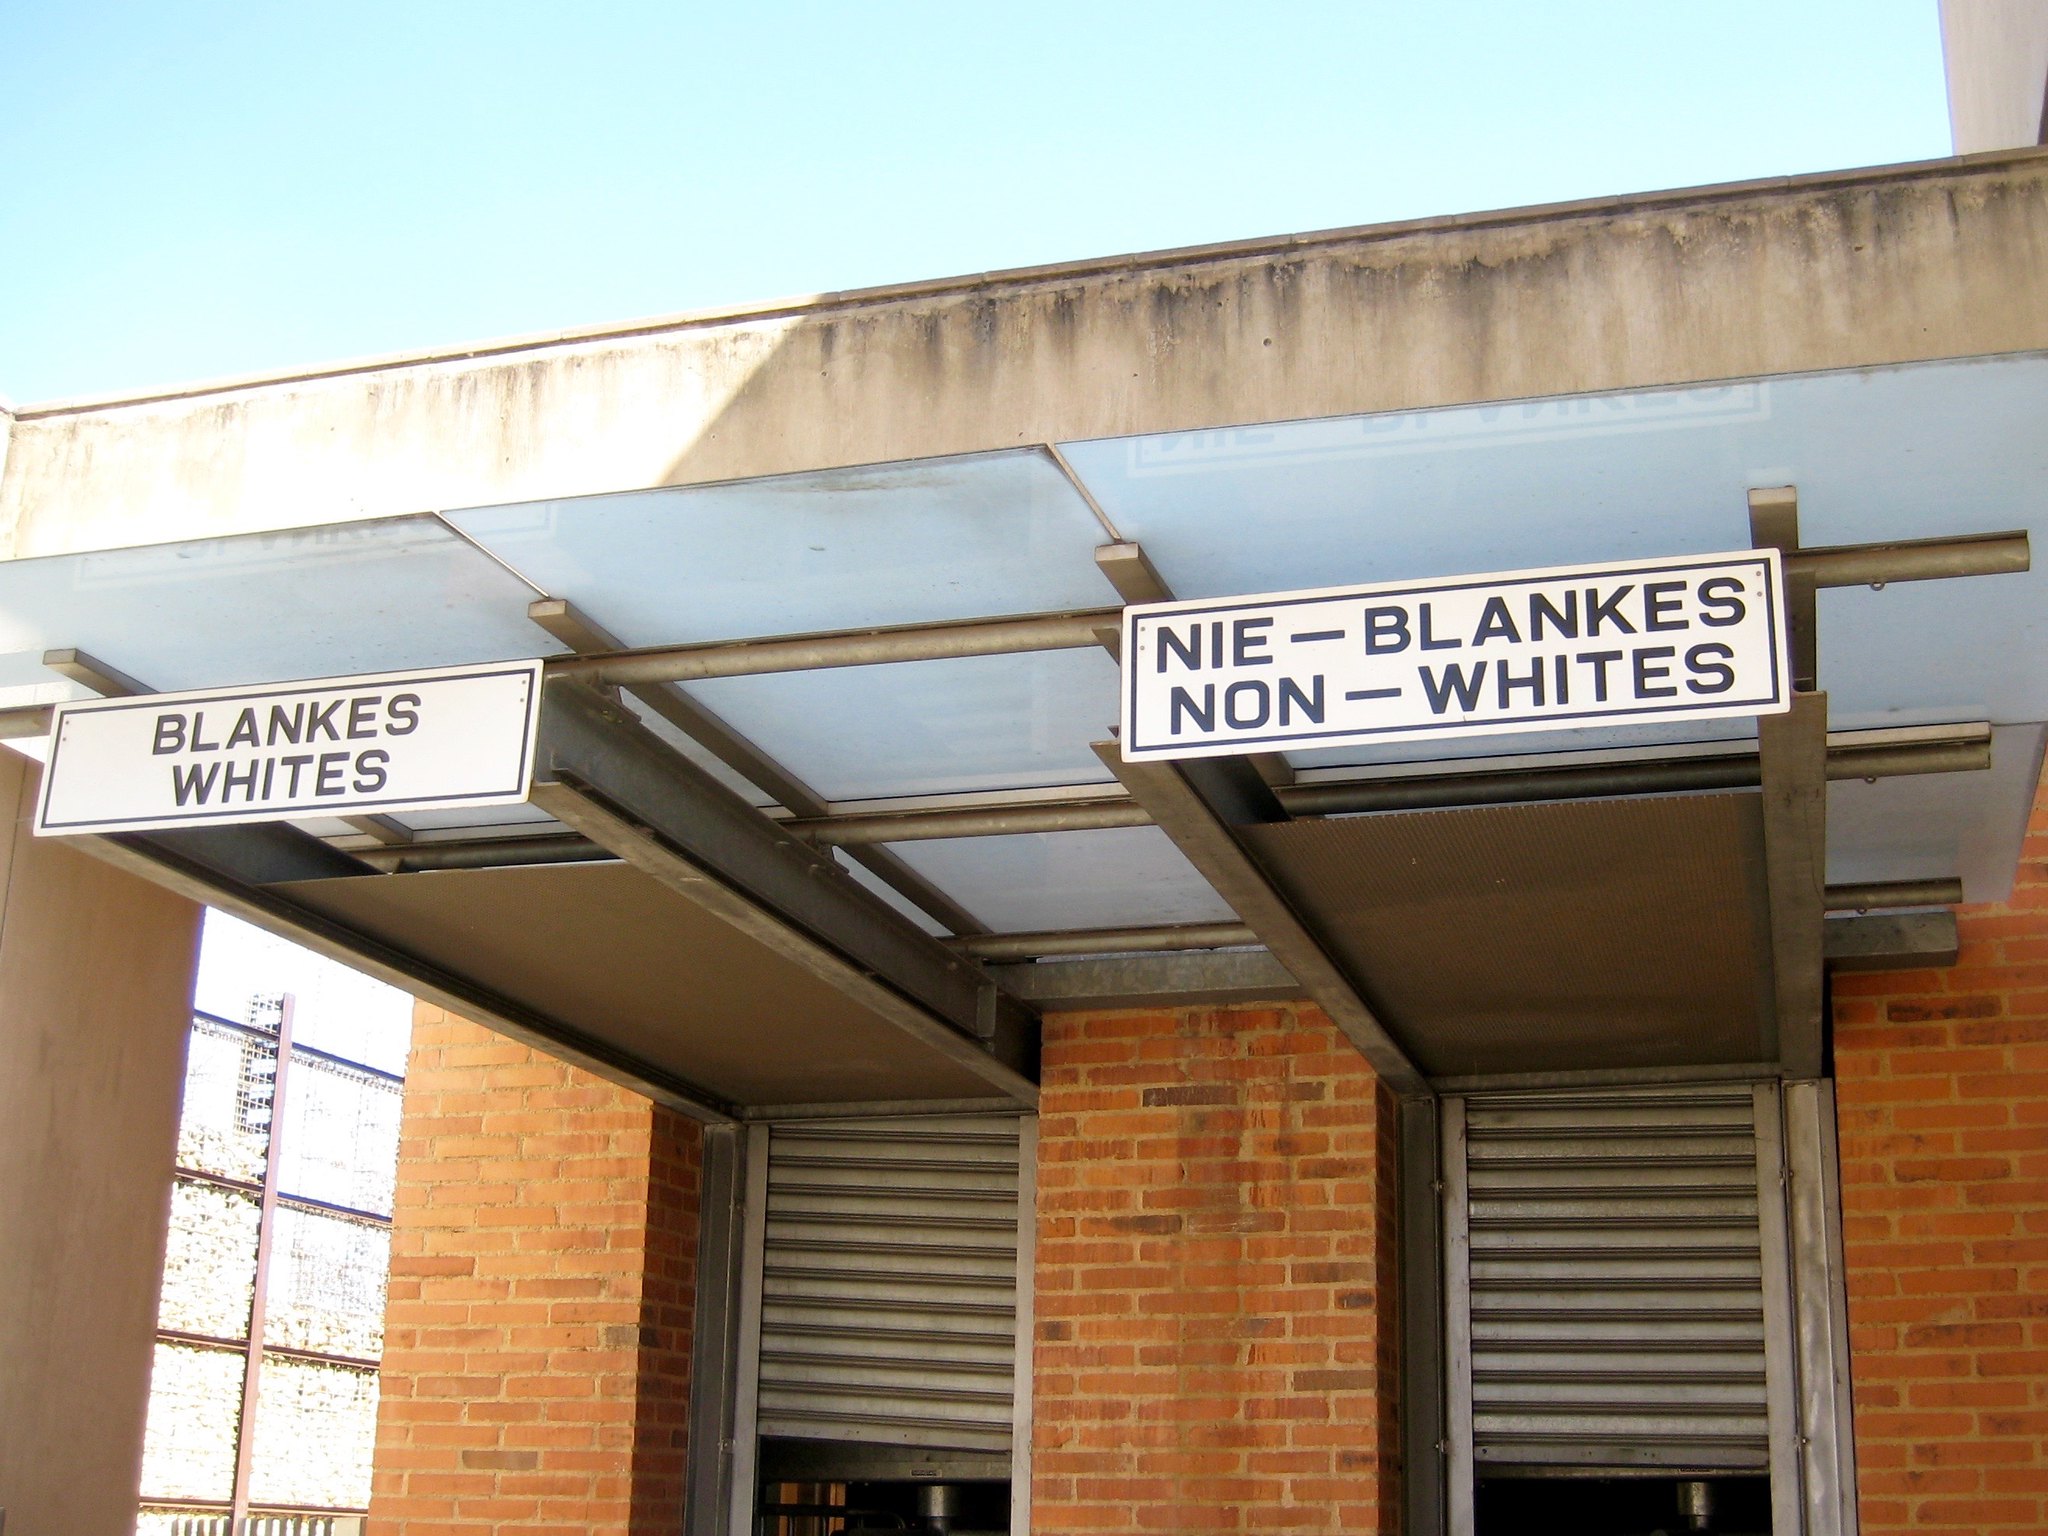 A greve geral de 1988 na África do Sul: um marco da luta operária contra o apartheid